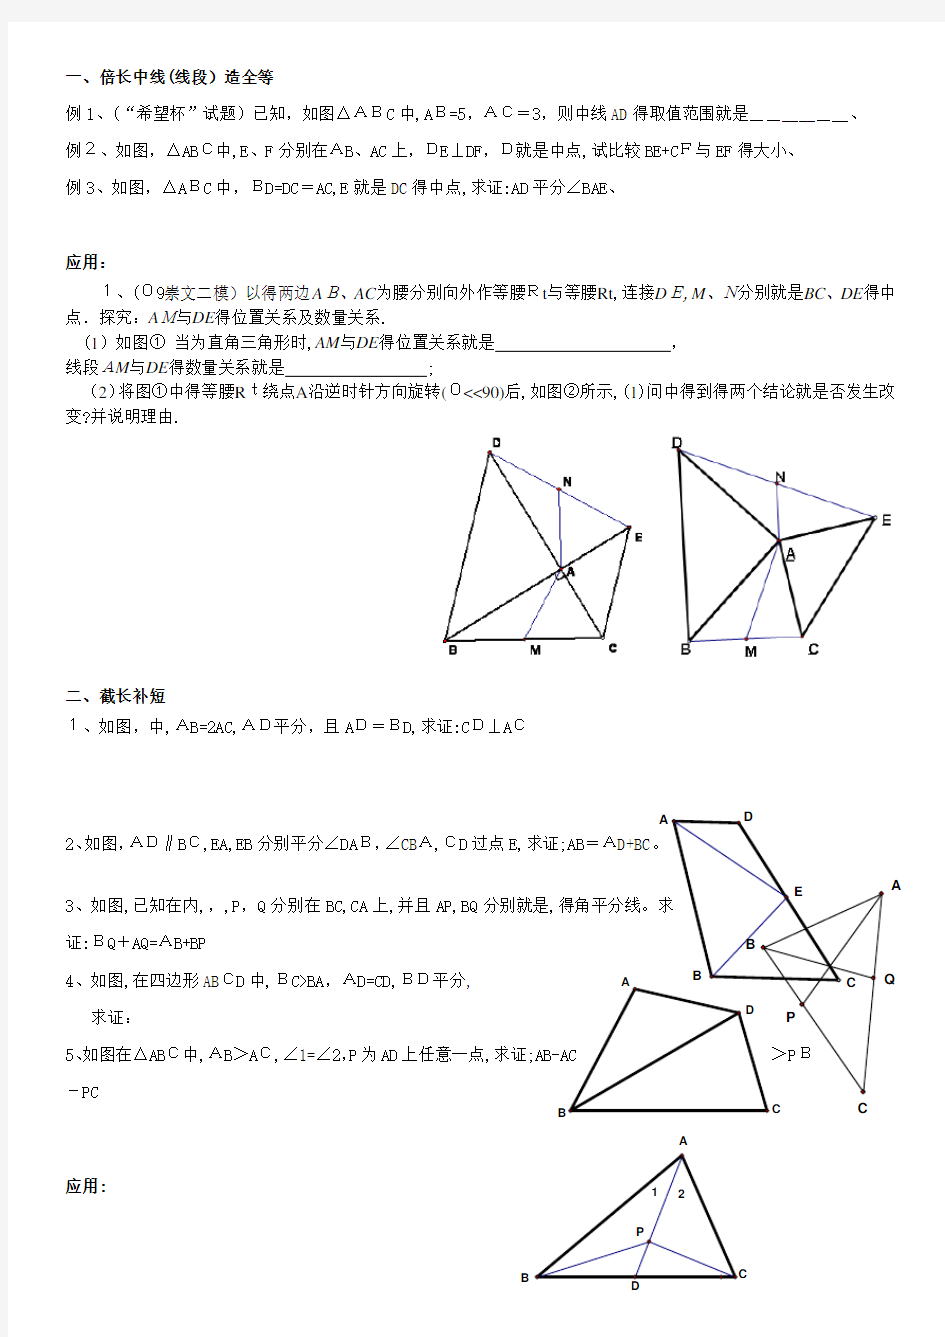 全等三角形问题中常见的几种辅助线的作法